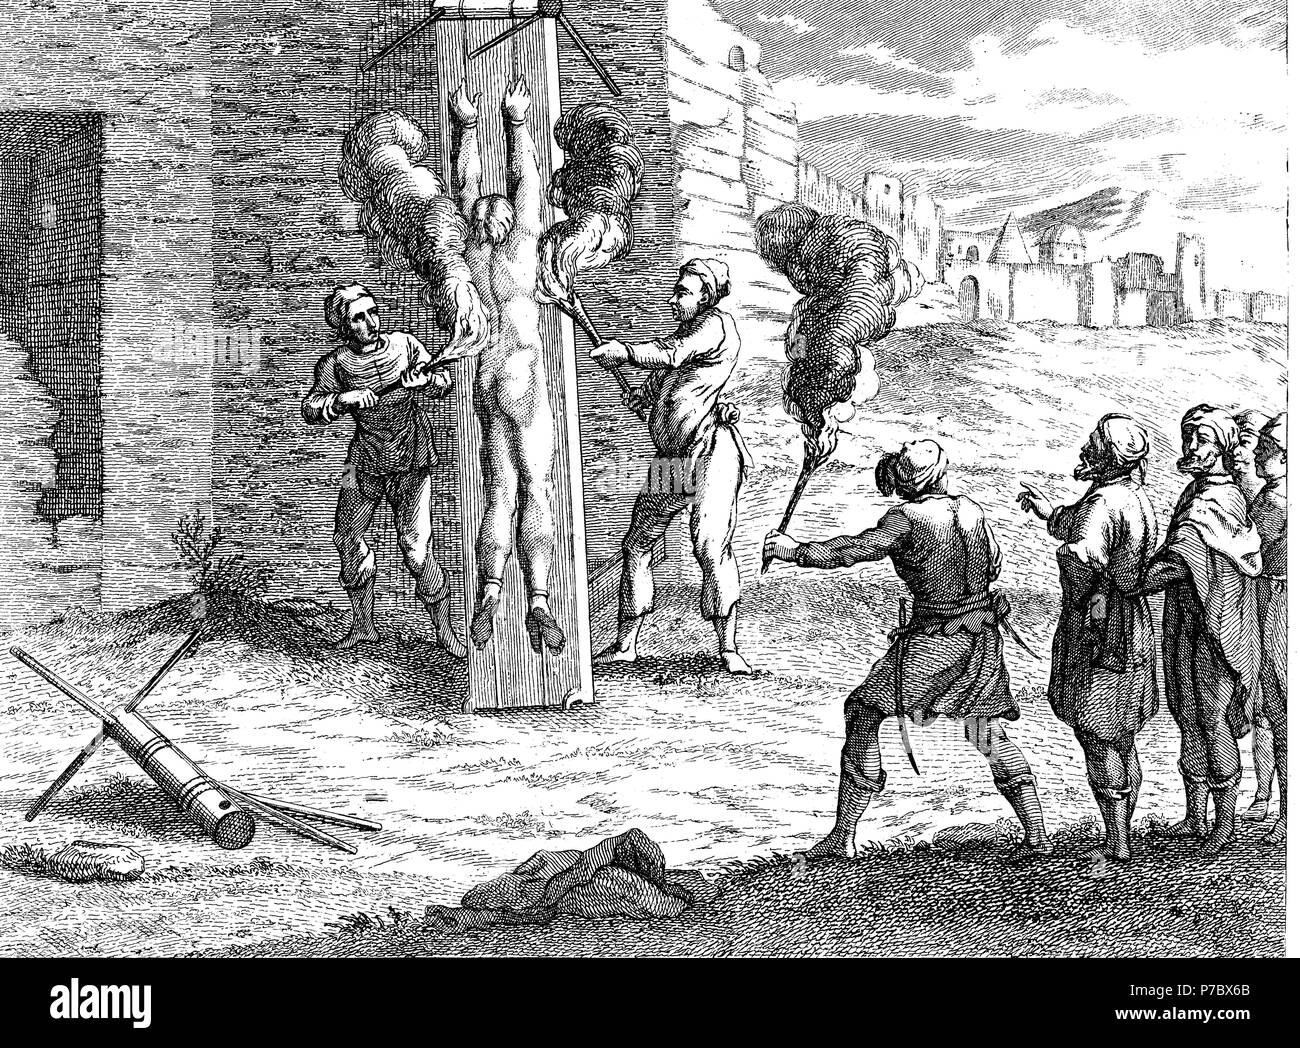 Historia sagrada. Cuerpo de un condenado abrasado con antorchas ardientes. Grabado de 1862. Stock Photo